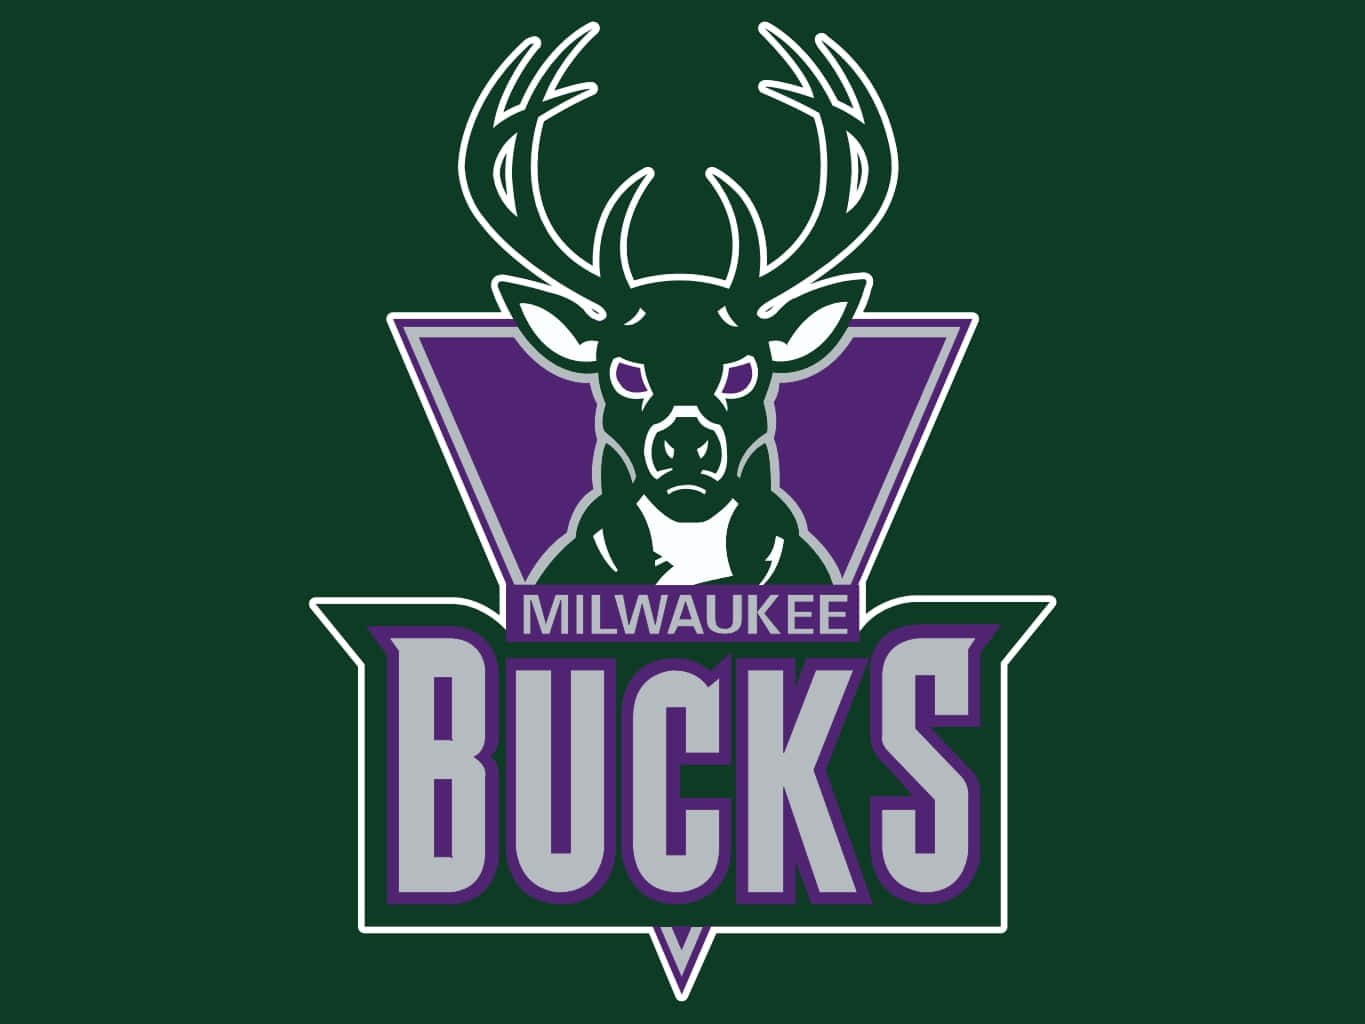 Ologotipo Do Milwaukee Bucks Representando A Cidade De Milwaukee. Papel de Parede